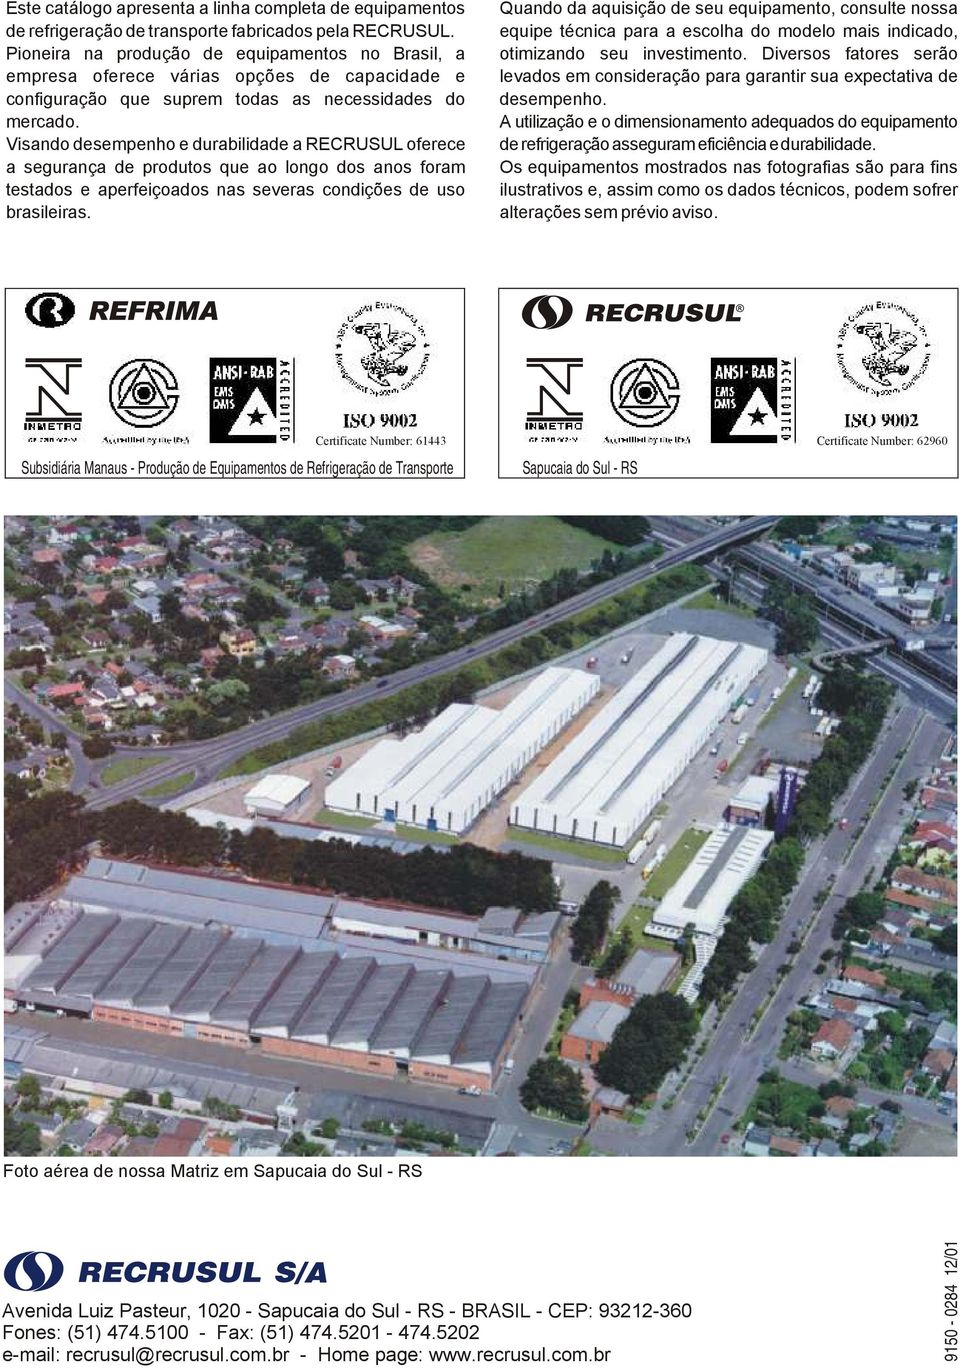 Visando desempenho e durabilidade a RECRUSUL oferece a segurança de produtos que ao longo dos anos foram testados e aperfeiçoados nas severas condições de uso brasileiras.